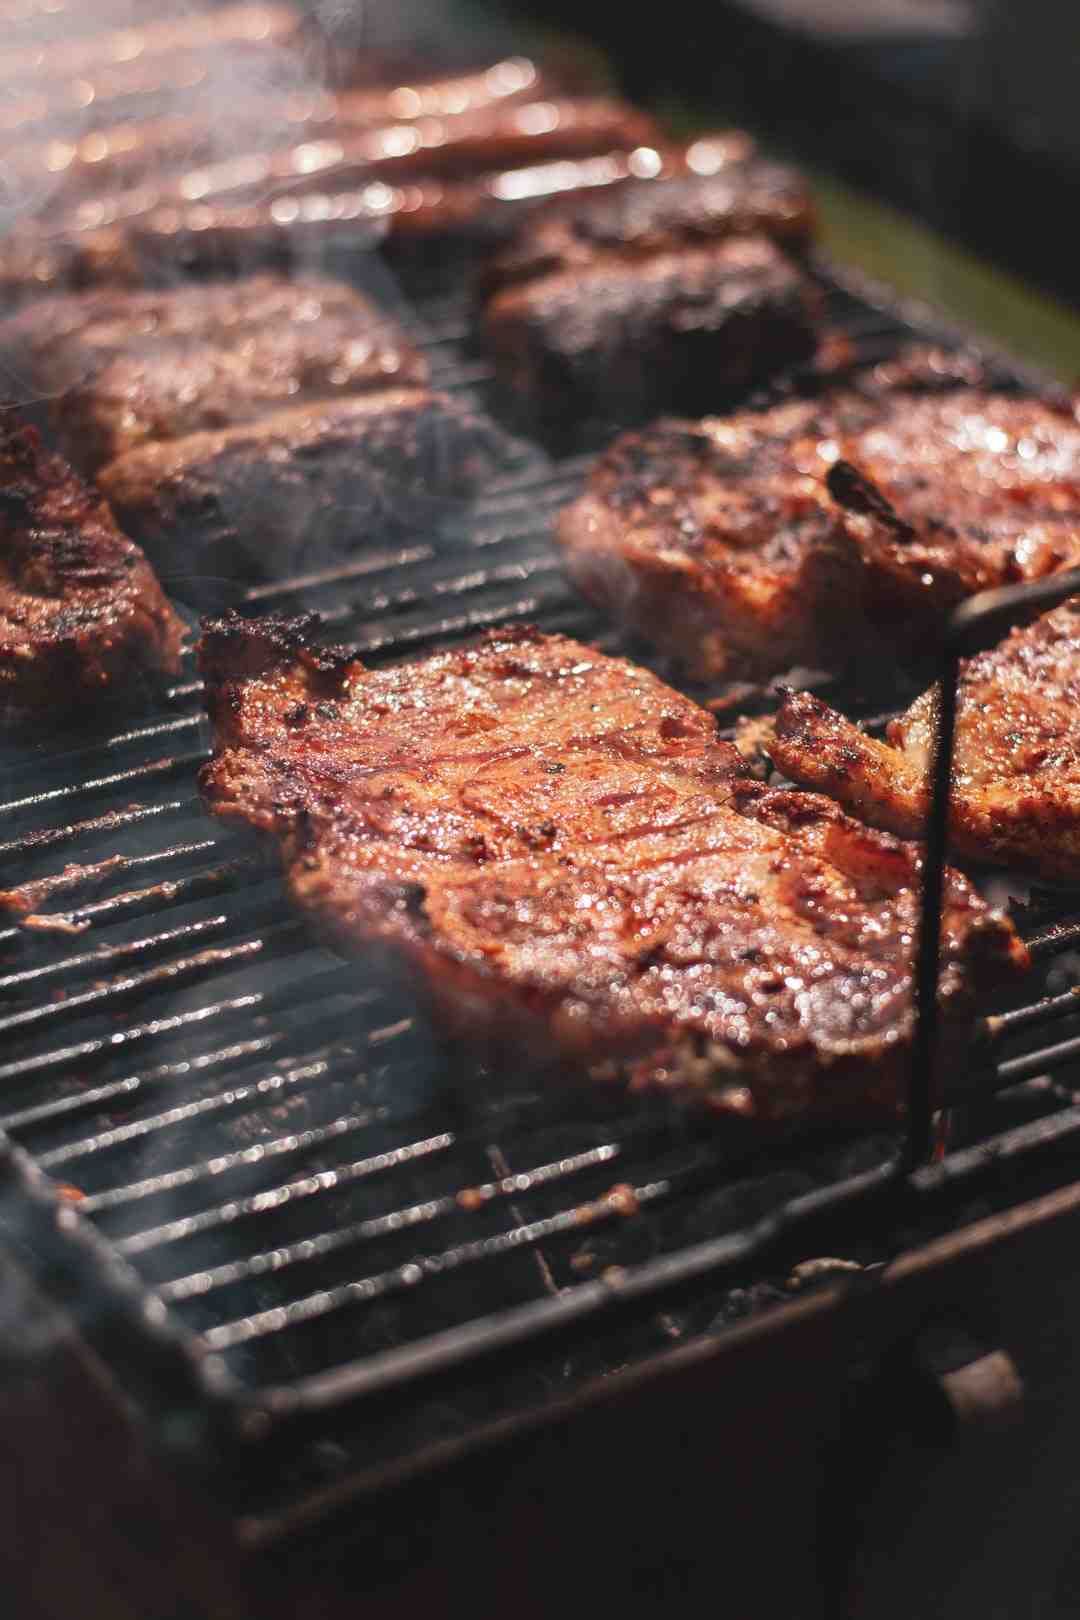 Quelle viande pour une cuisson basse température ?